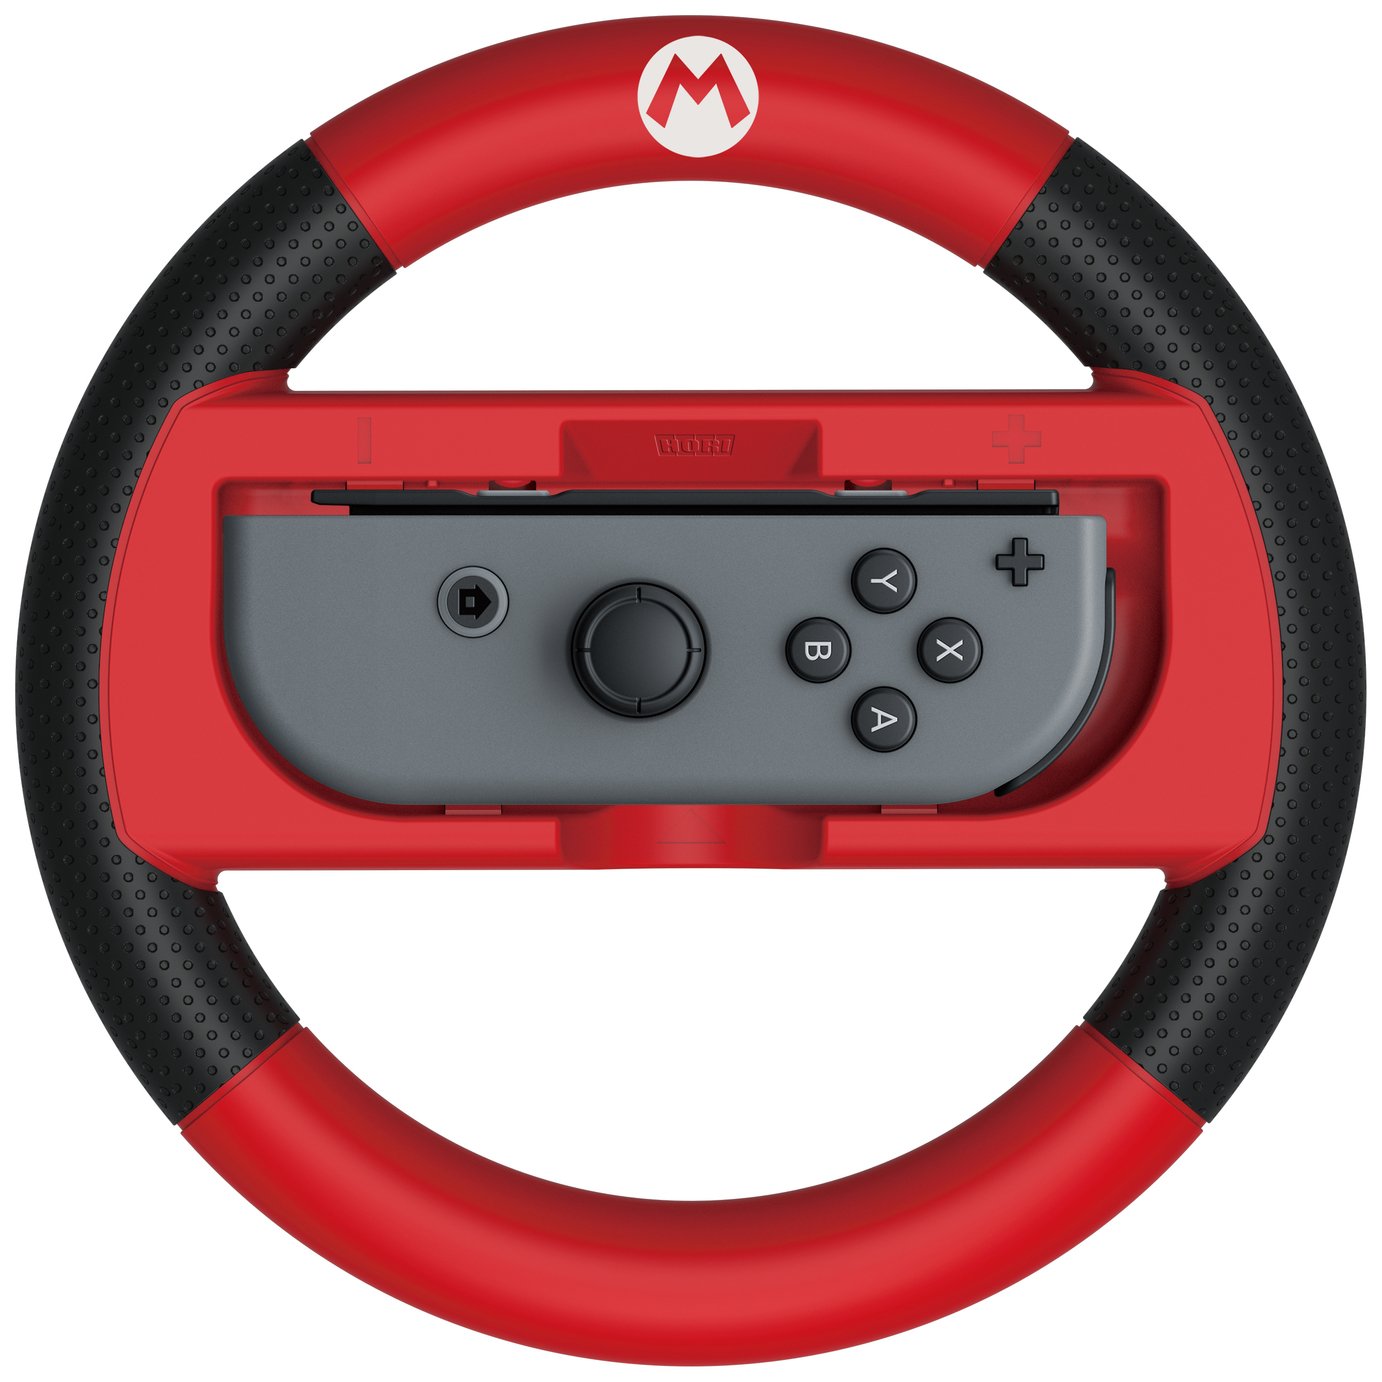 Mario Kart 8 Deluxe Racing Wheel Review